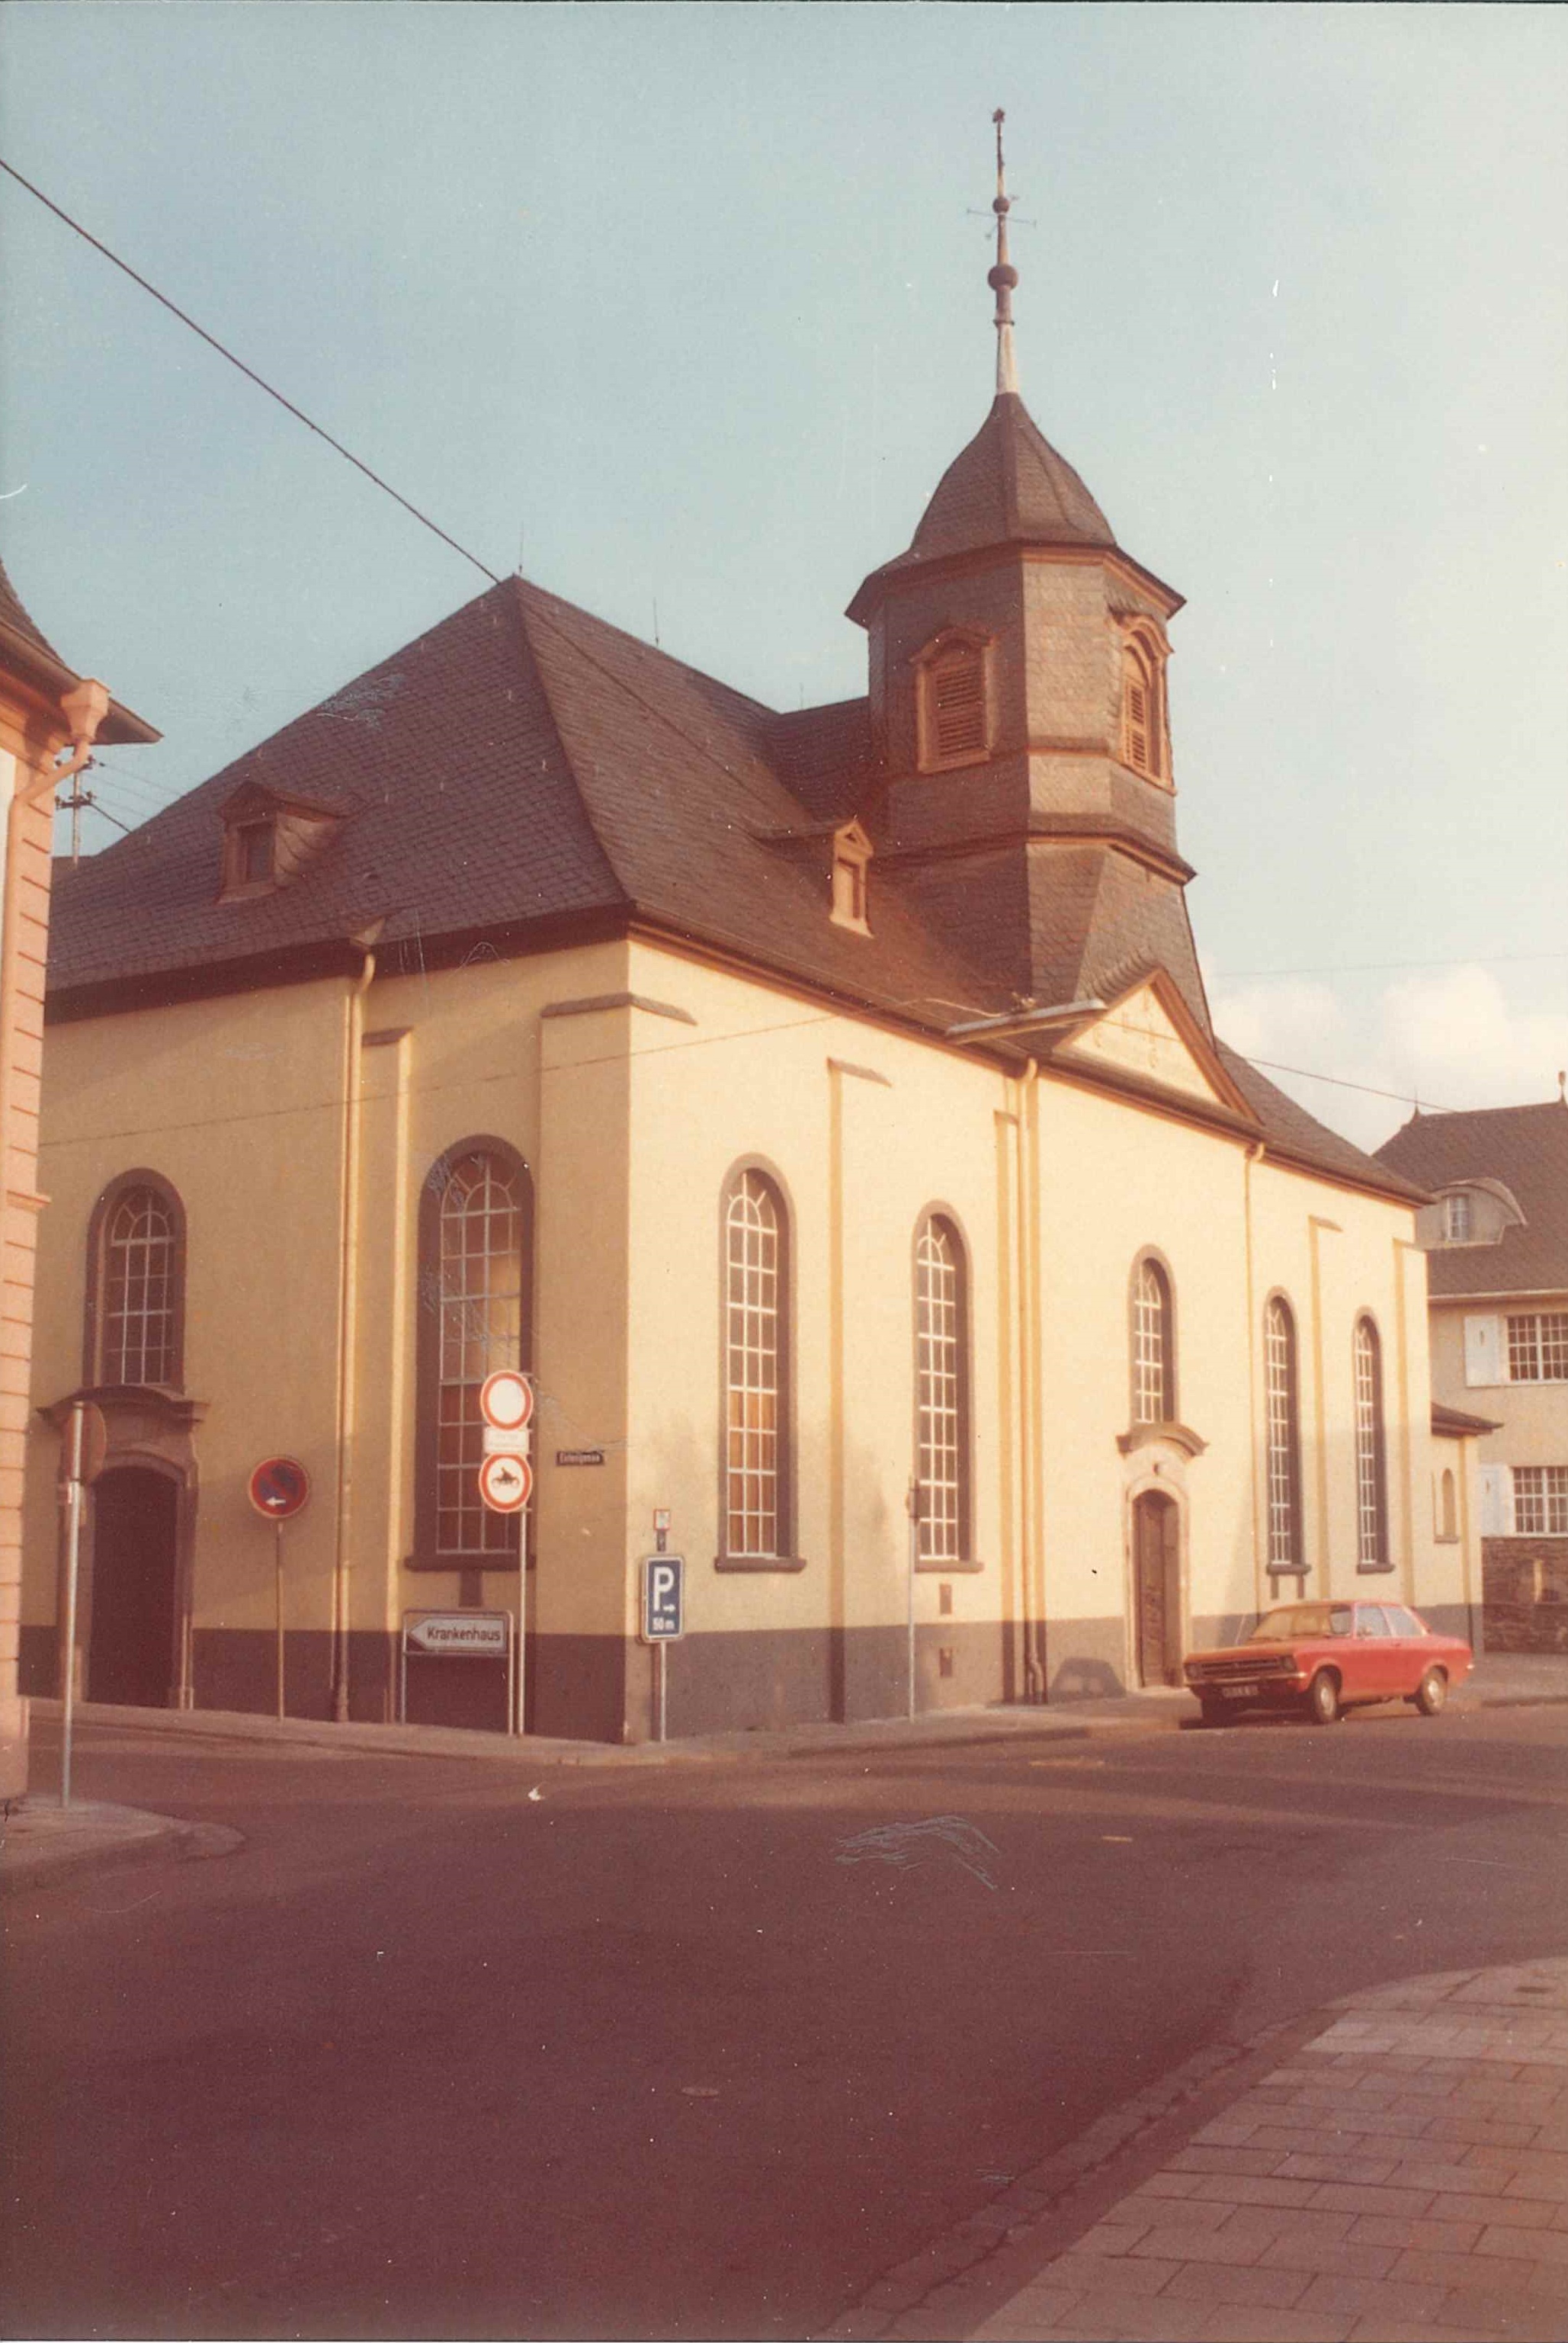 Evangelischer Gemeindesaal, Bendorf am Rhein, 1977 (REM CC BY-NC-SA)